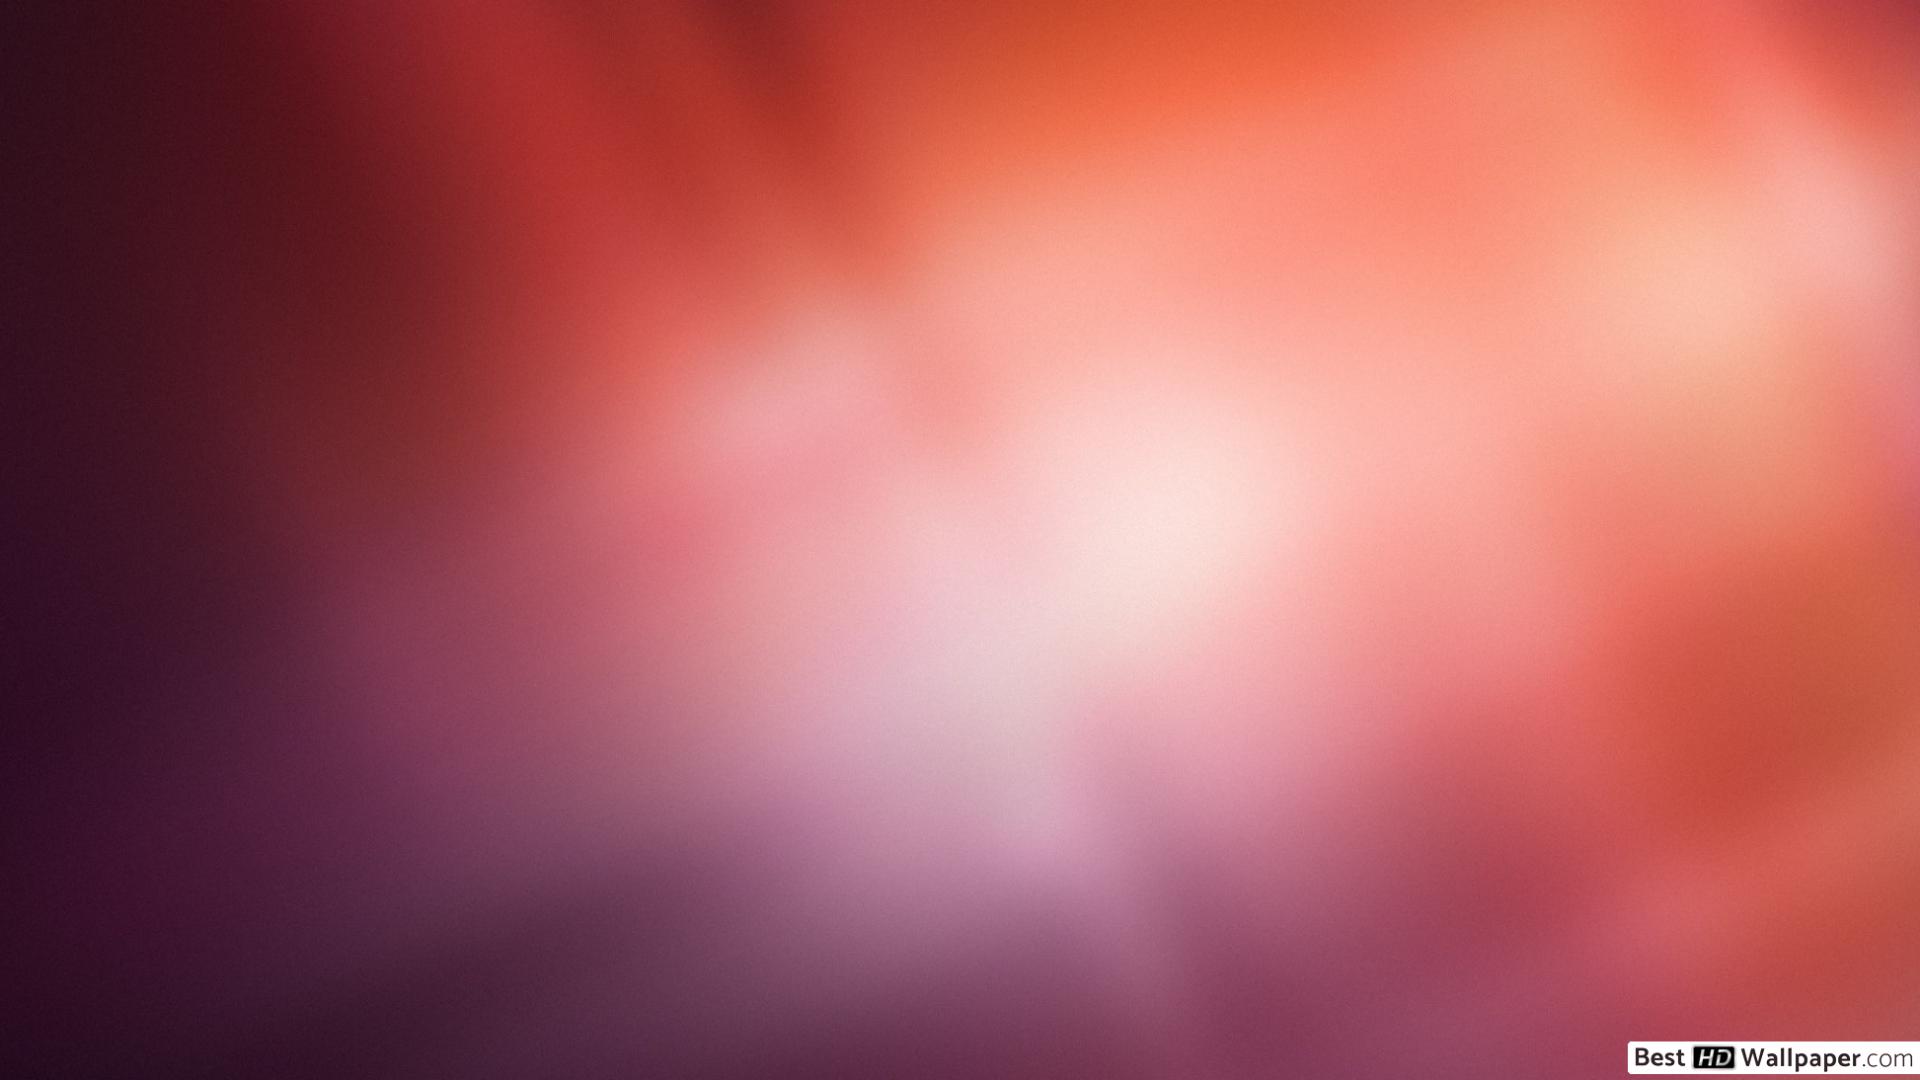 ubuntuの壁紙,赤,ピンク,空,光,紫の